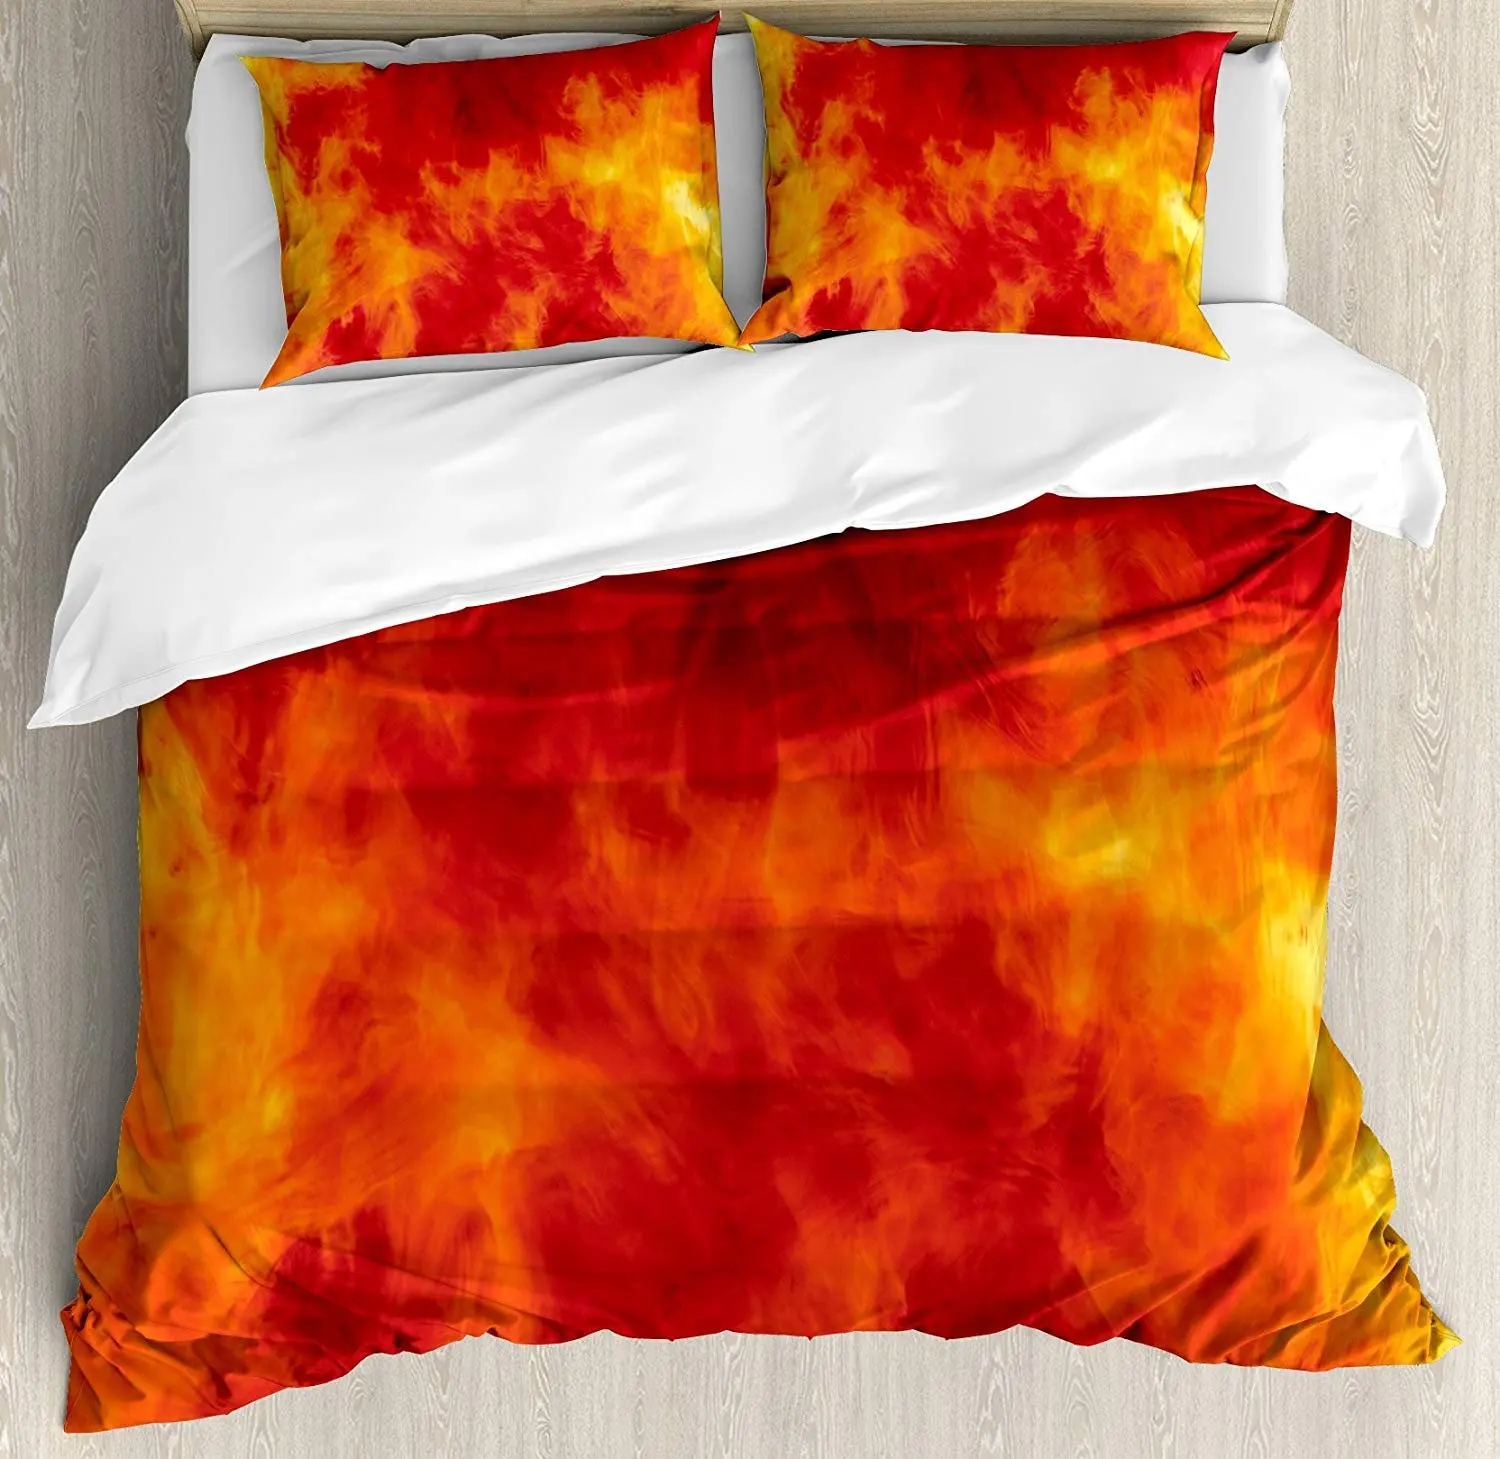 

Orange Bedding Set Graphic of Fire Vibrant Flames Illustration Heat Burning Design Art Print Duvet Cover Pillowcase For Home